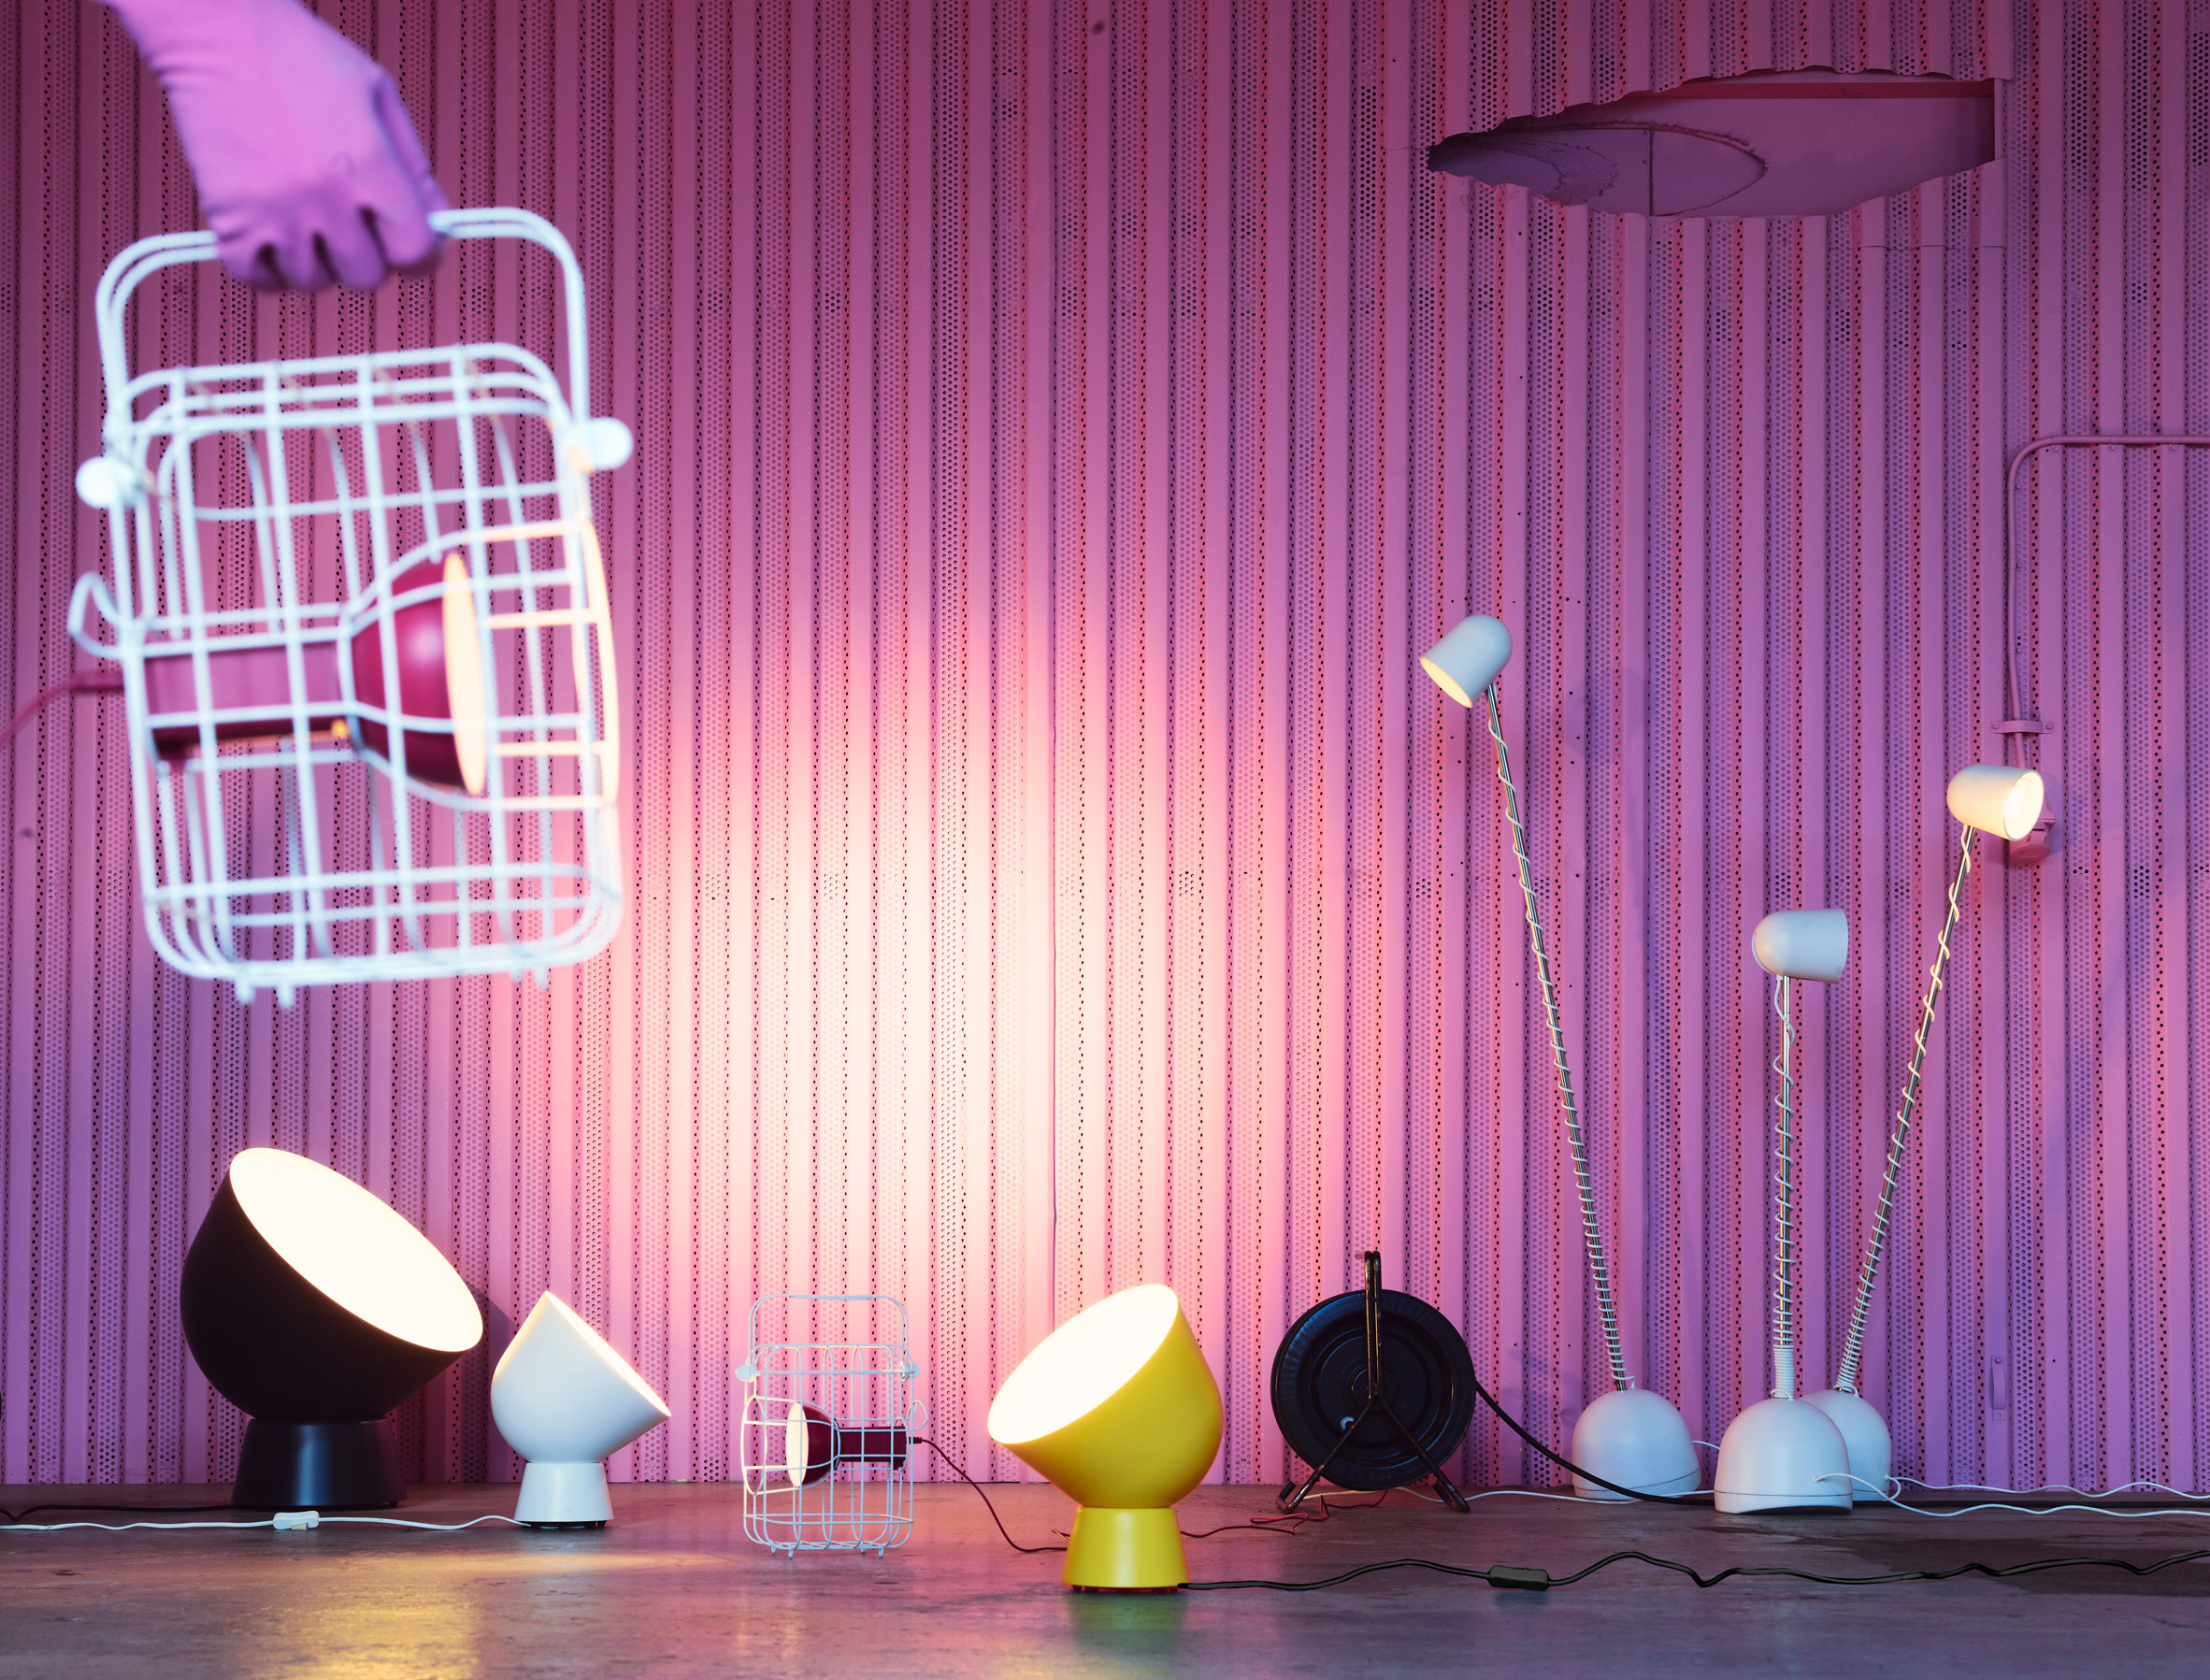 speelplaats Toeschouwer draad Matali Crasset models caged IKEA light on vintage railway lamps